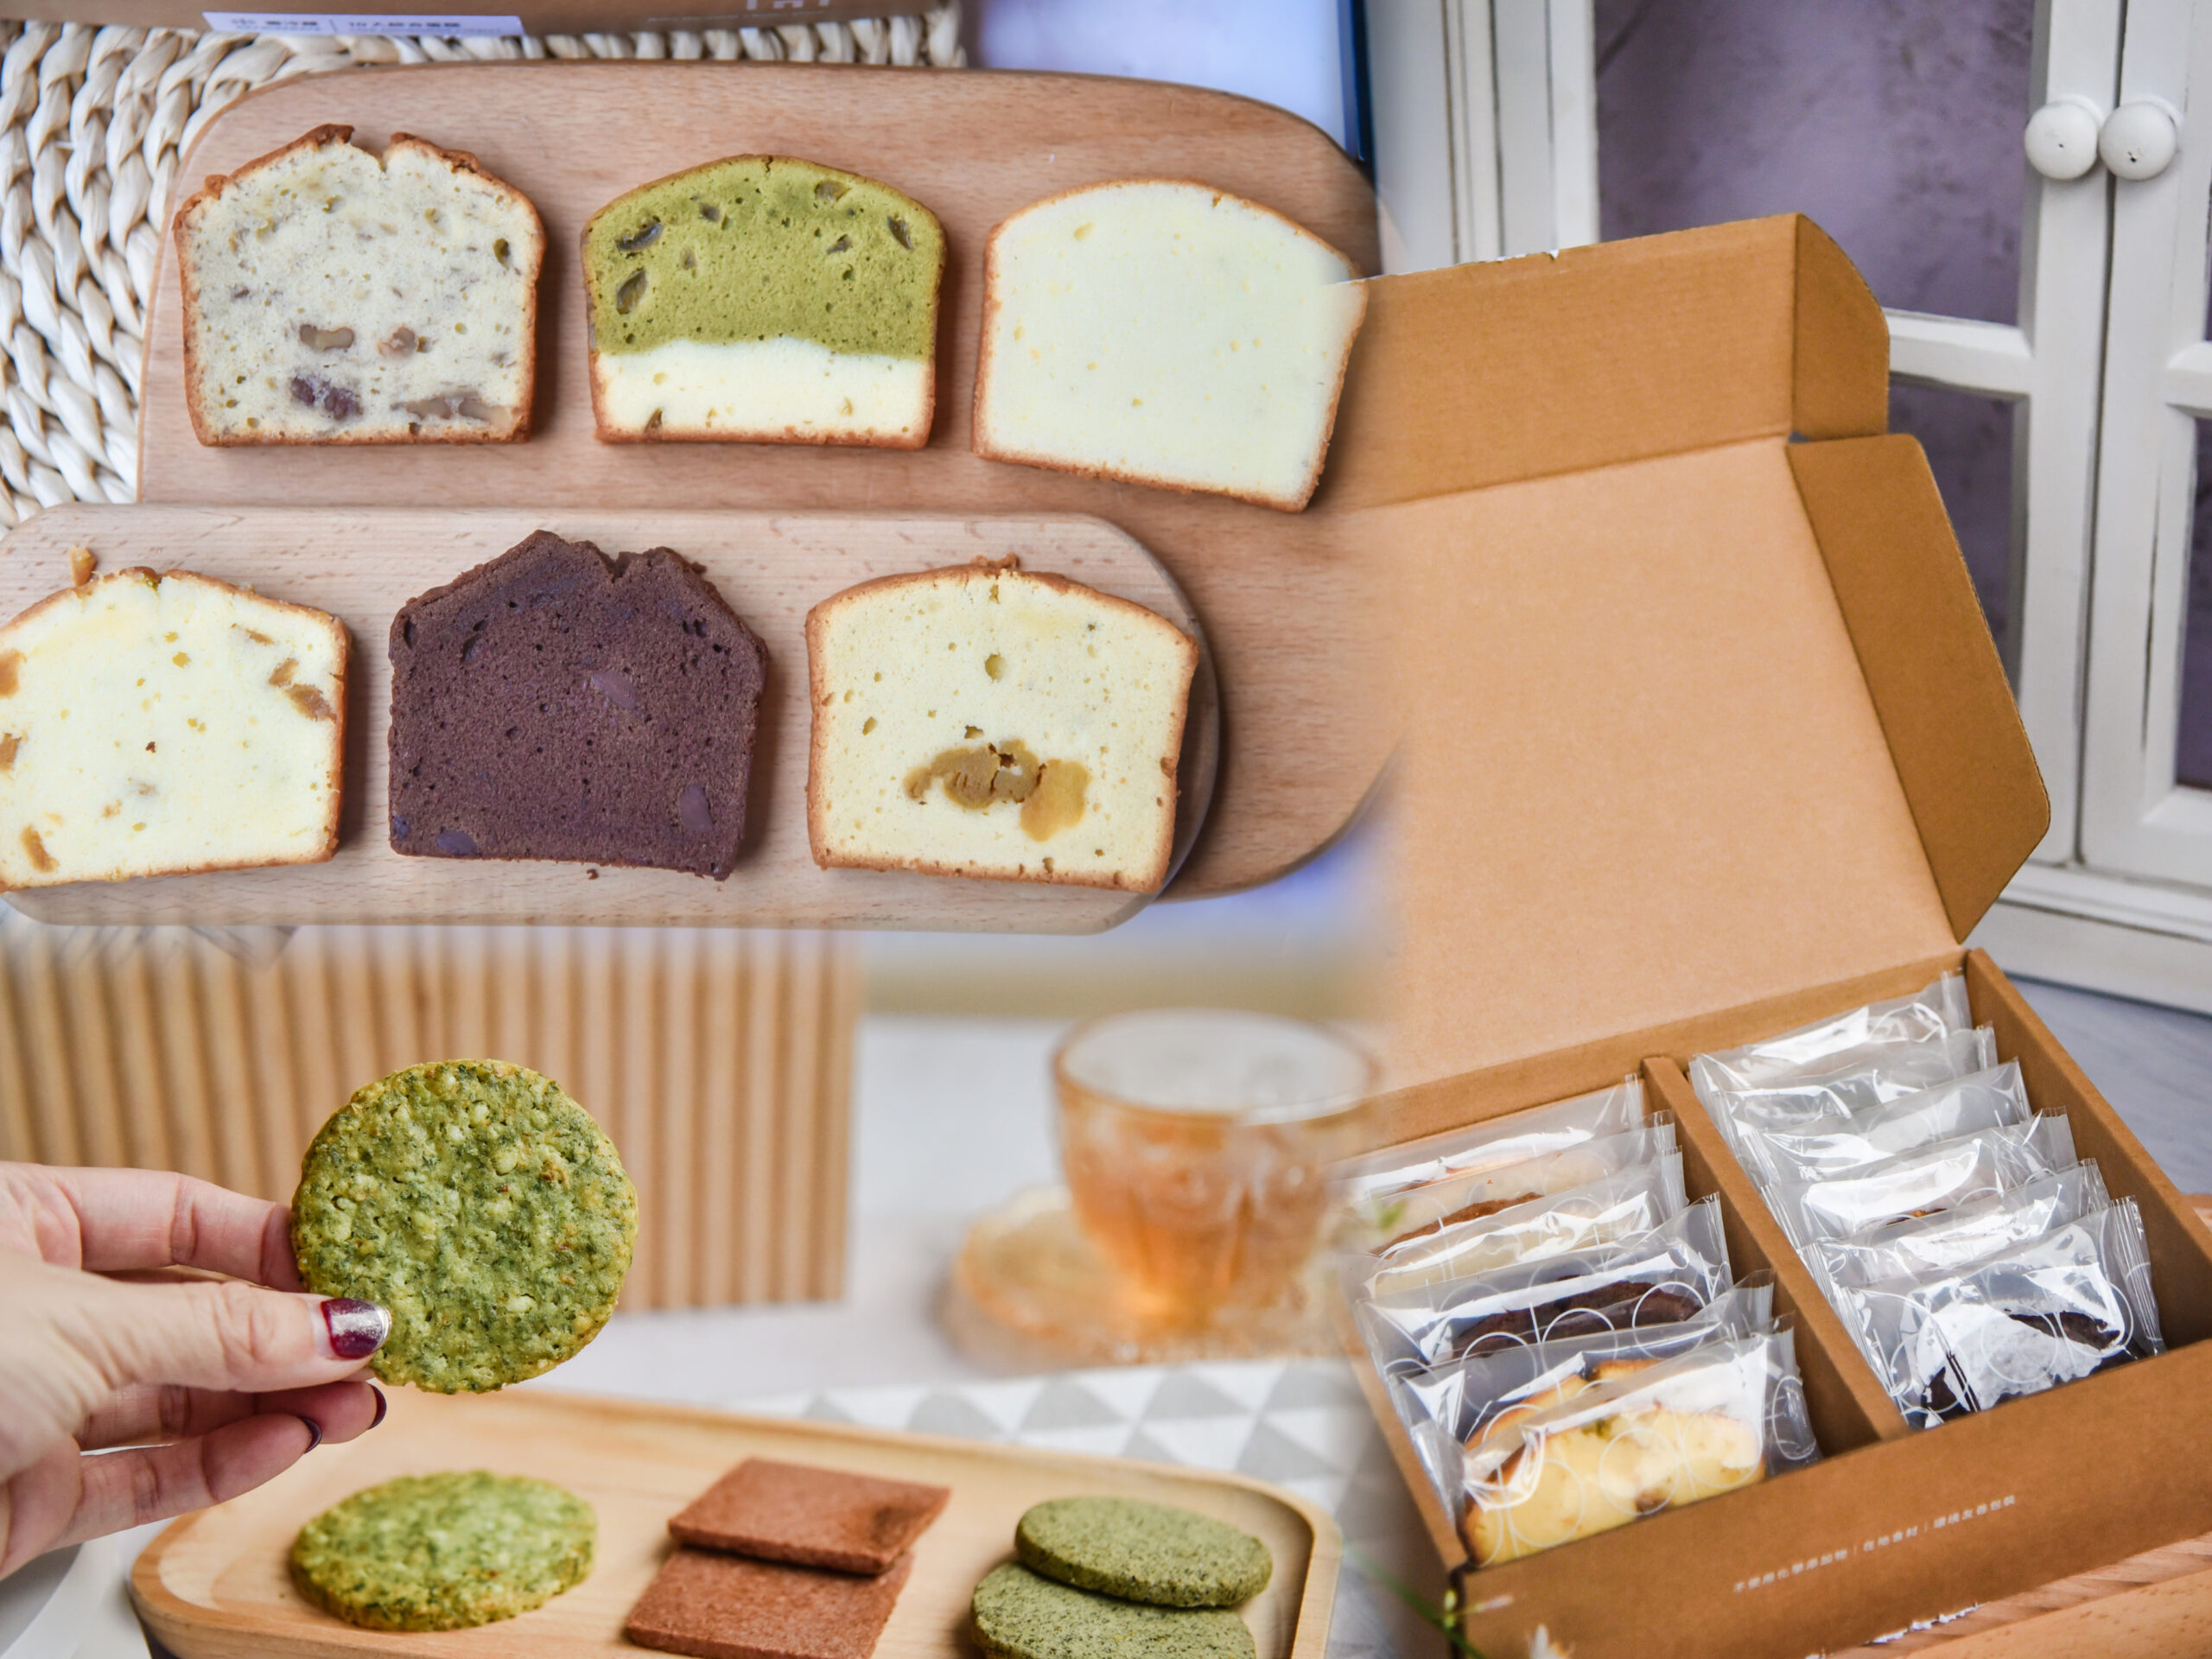 [彌月試吃] 2019糖村彌月蛋糕試吃費用及心得分享-蜂蜜哈尼捲 法式鮮奶乳酪 牛軋糖年節禮盒 @ELSA菲常好攝